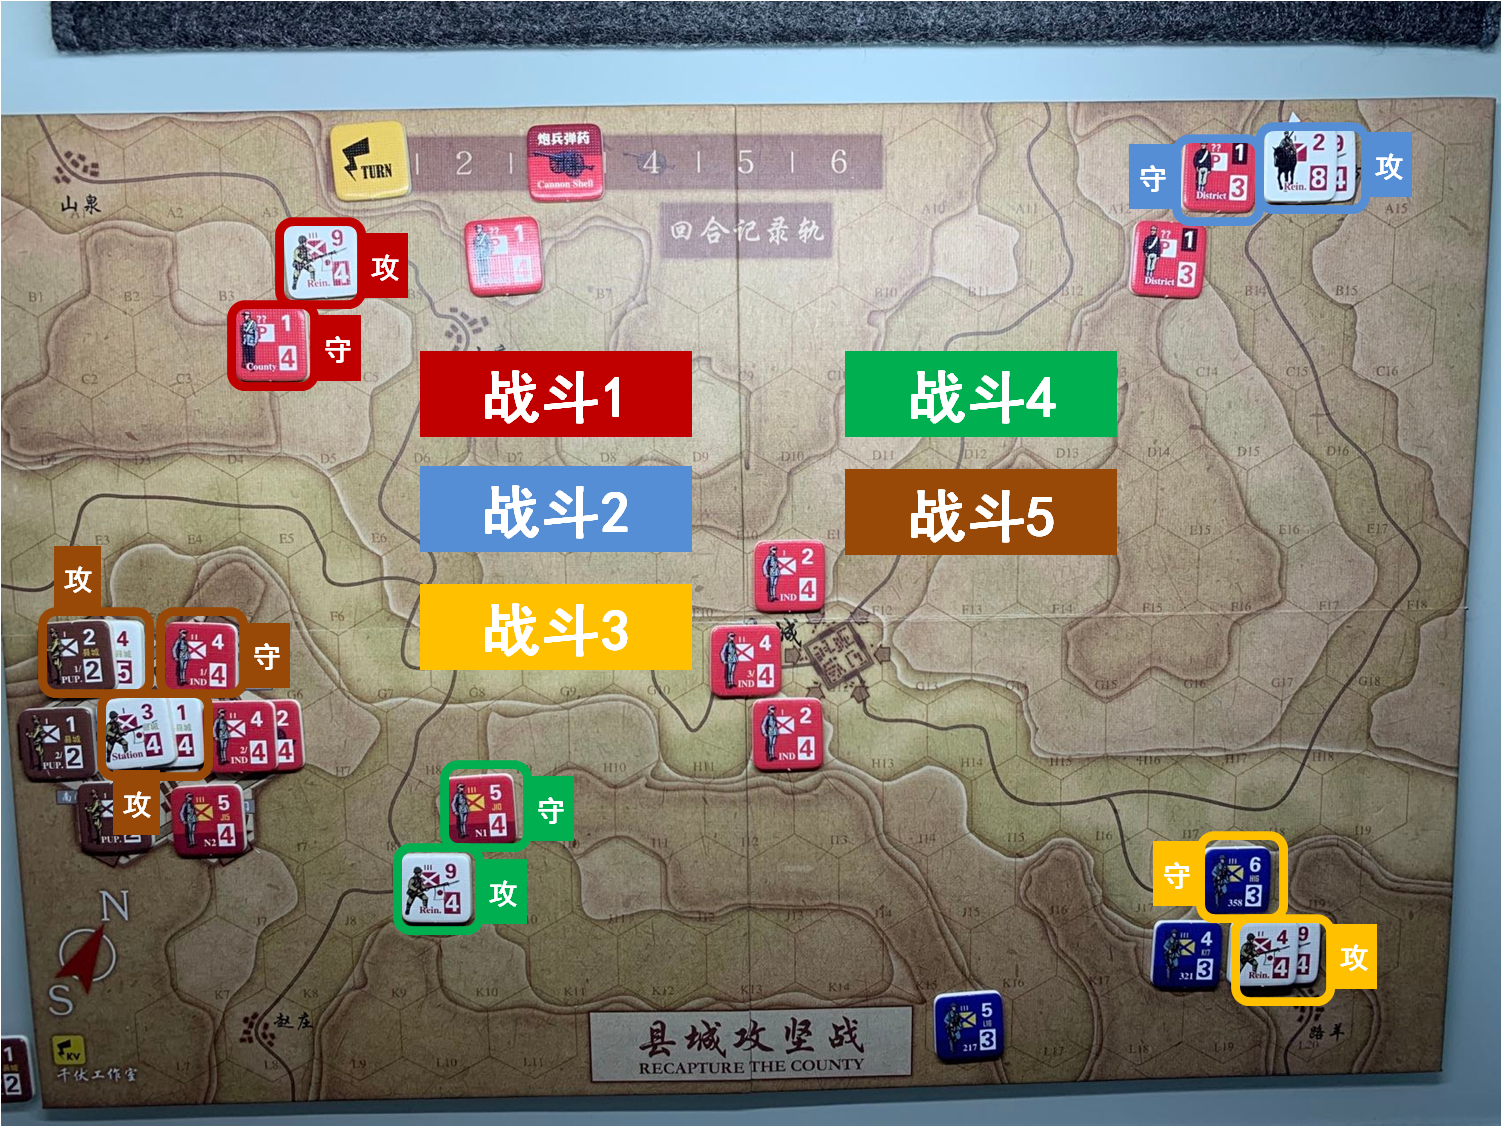 第一回合 日方戰鬥階段 戰鬥計劃